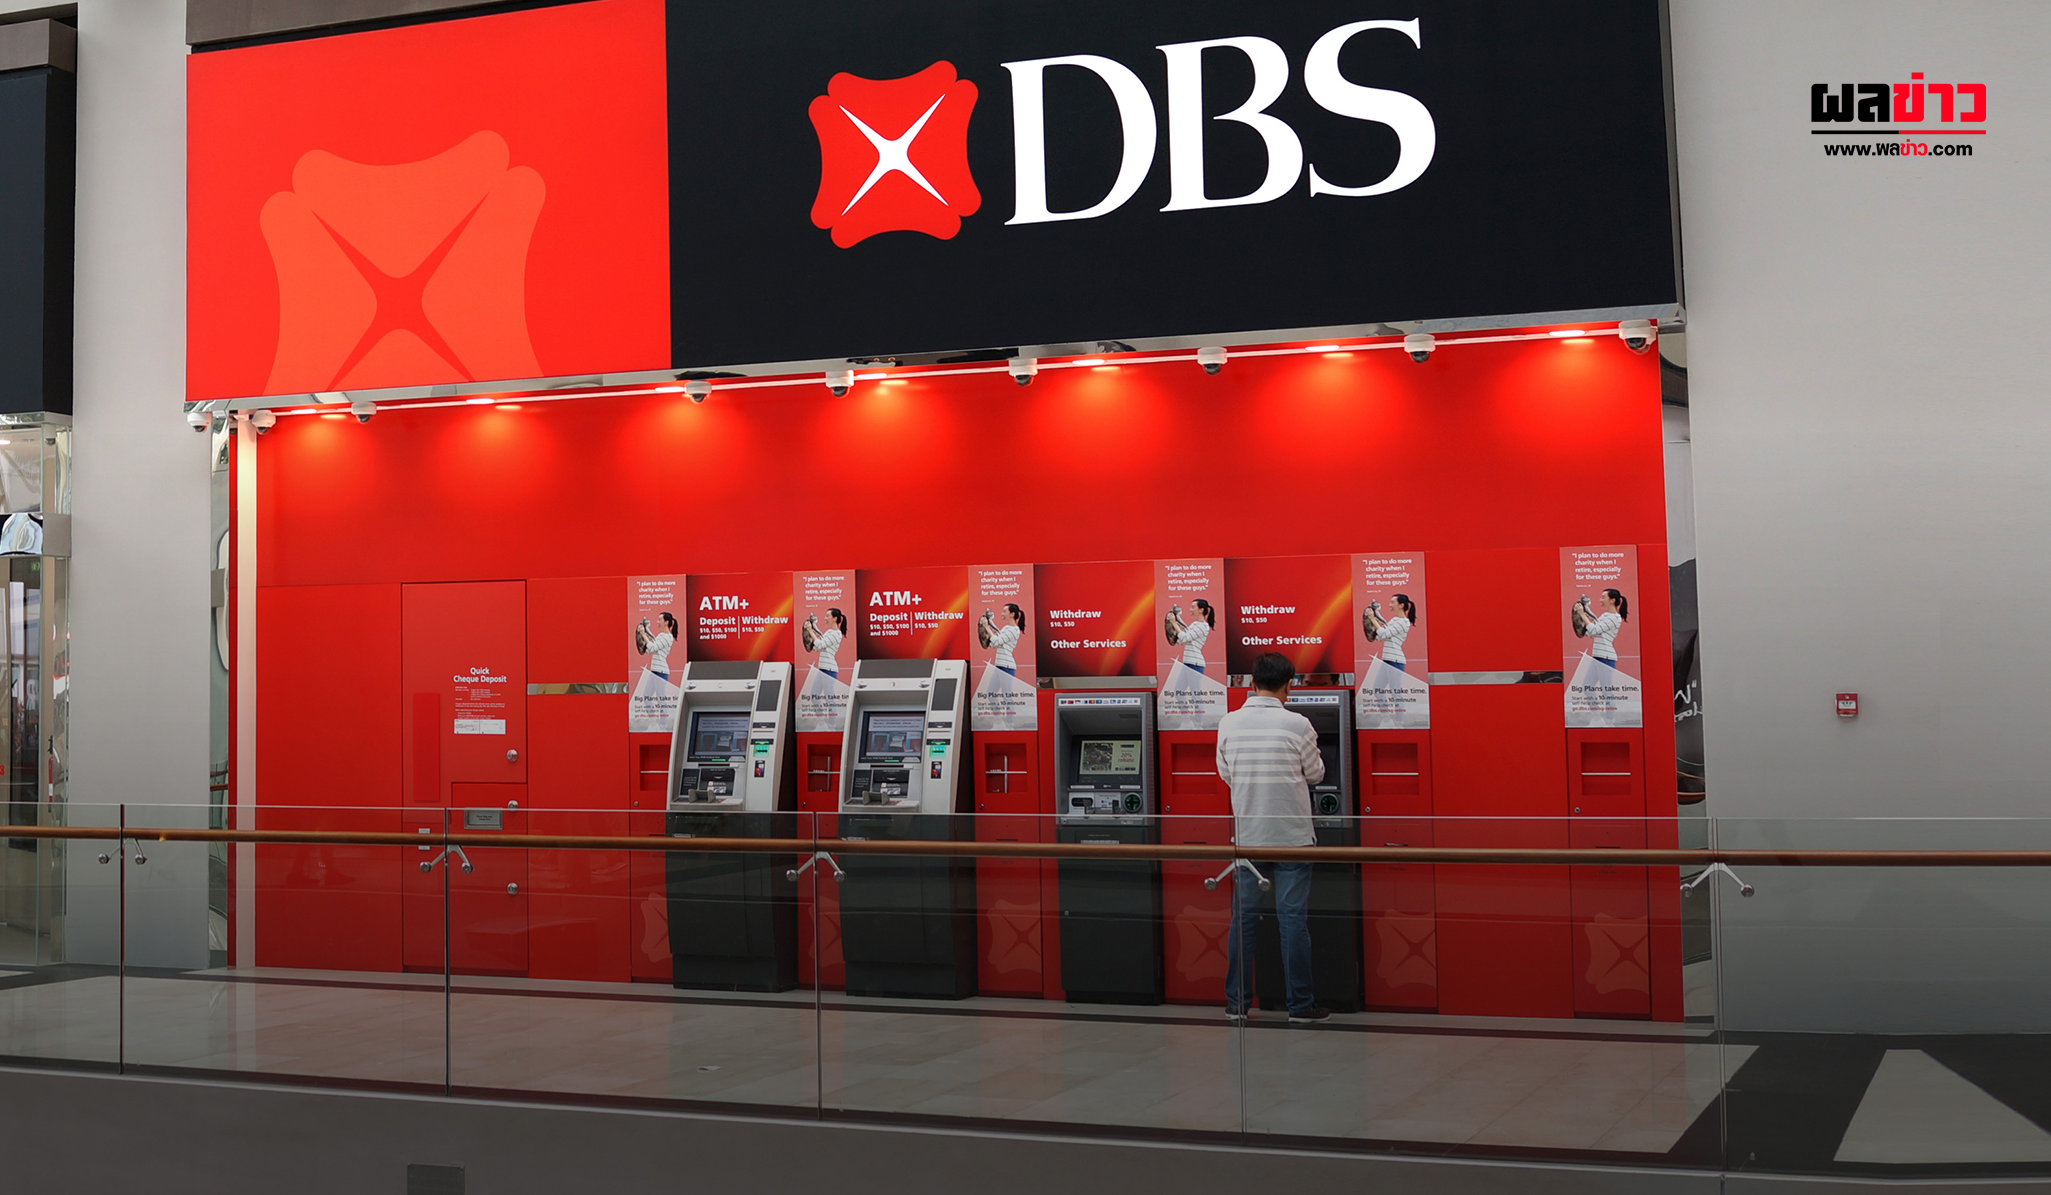 ธนาคาร DBS